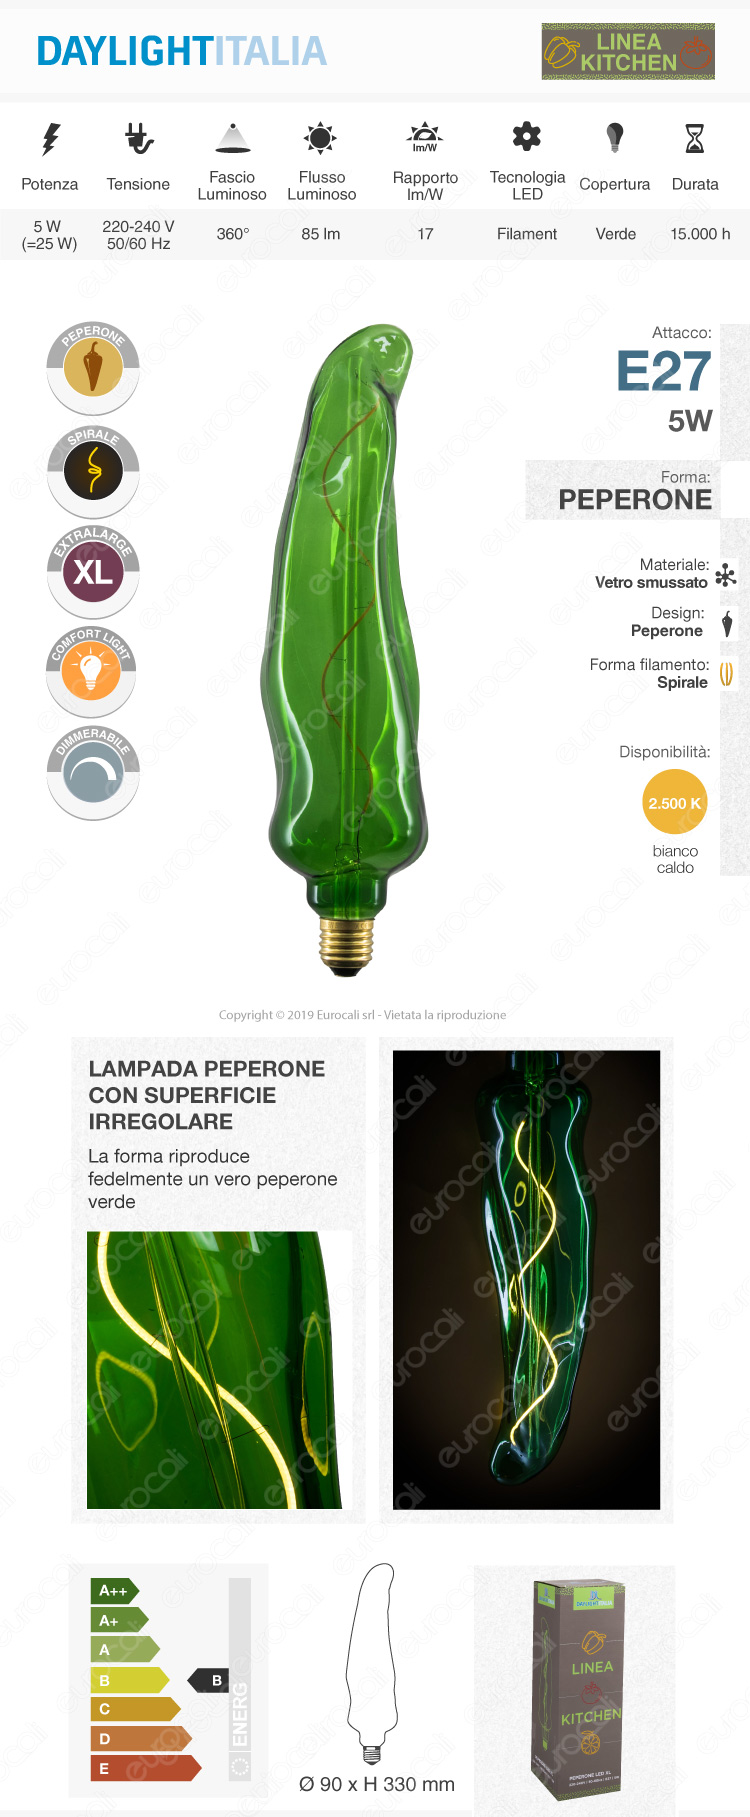 Daylight Lampadina E27 Filamento LED a Spirale 5W Linea Kitchen Forma Peperone con Vetro Giallo Dimmerabile